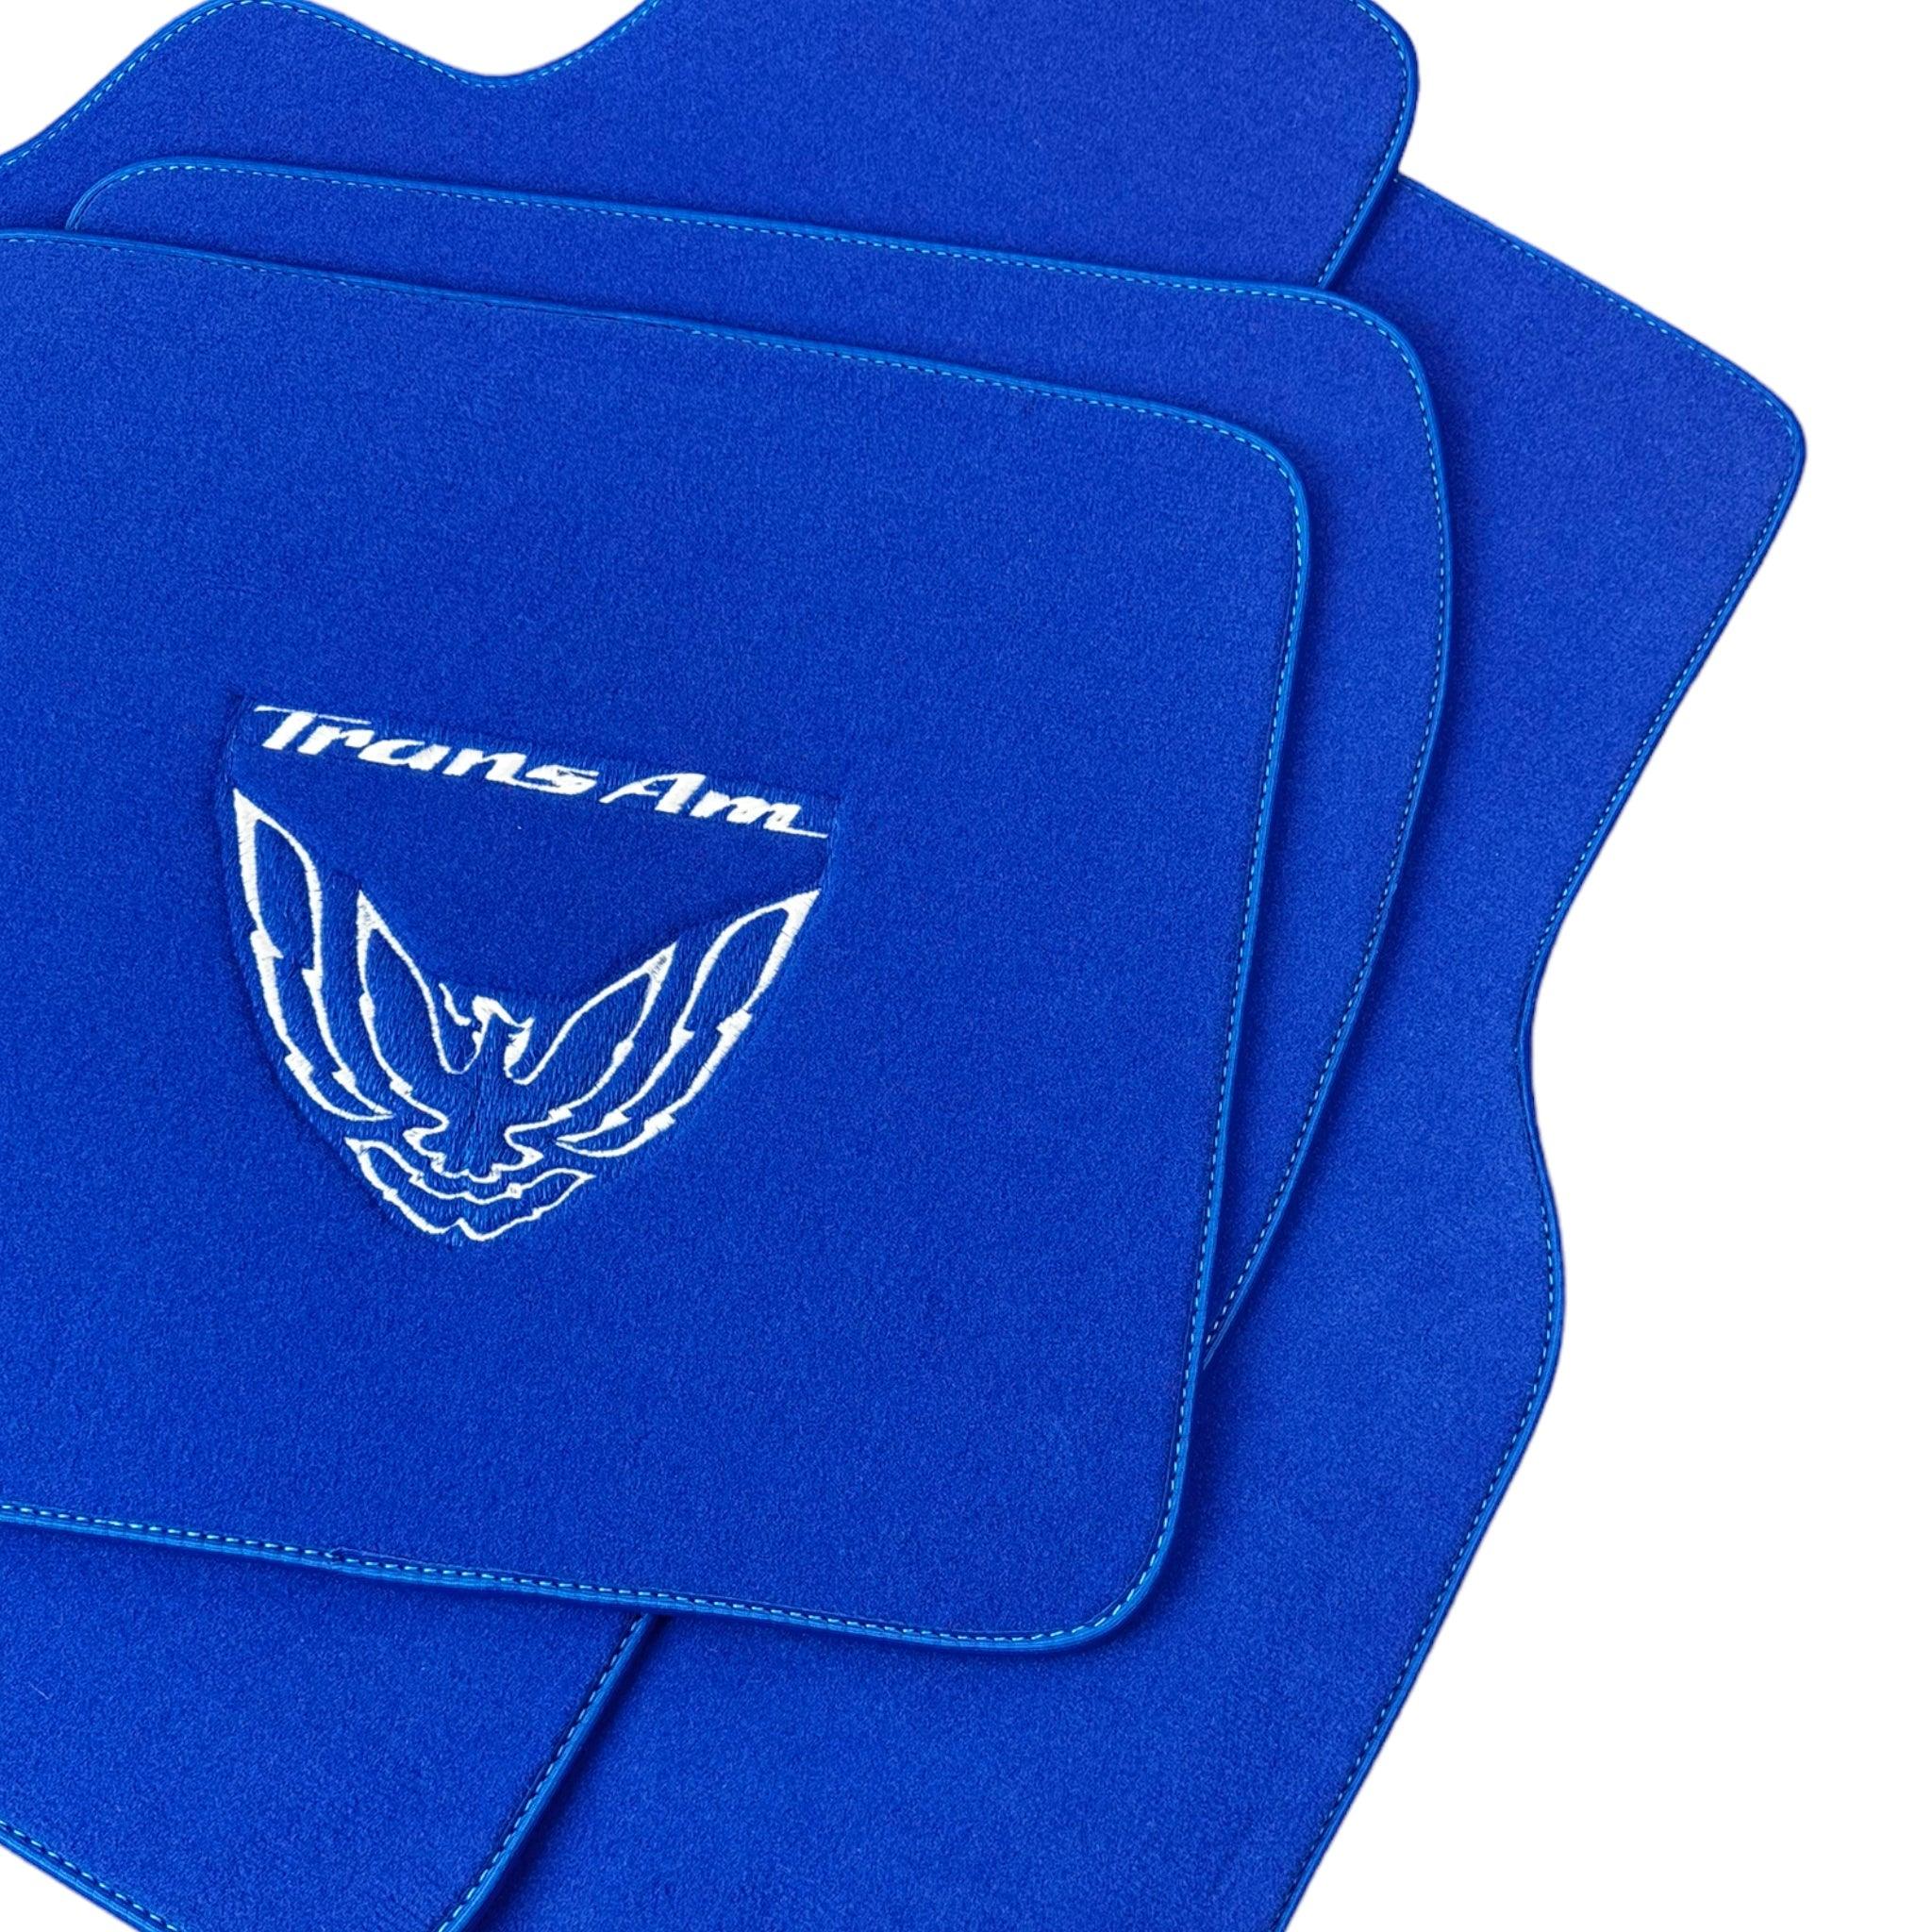 Blue Floor Mats for Pontiac FireBird (1993-2002) with Trans Am Logo